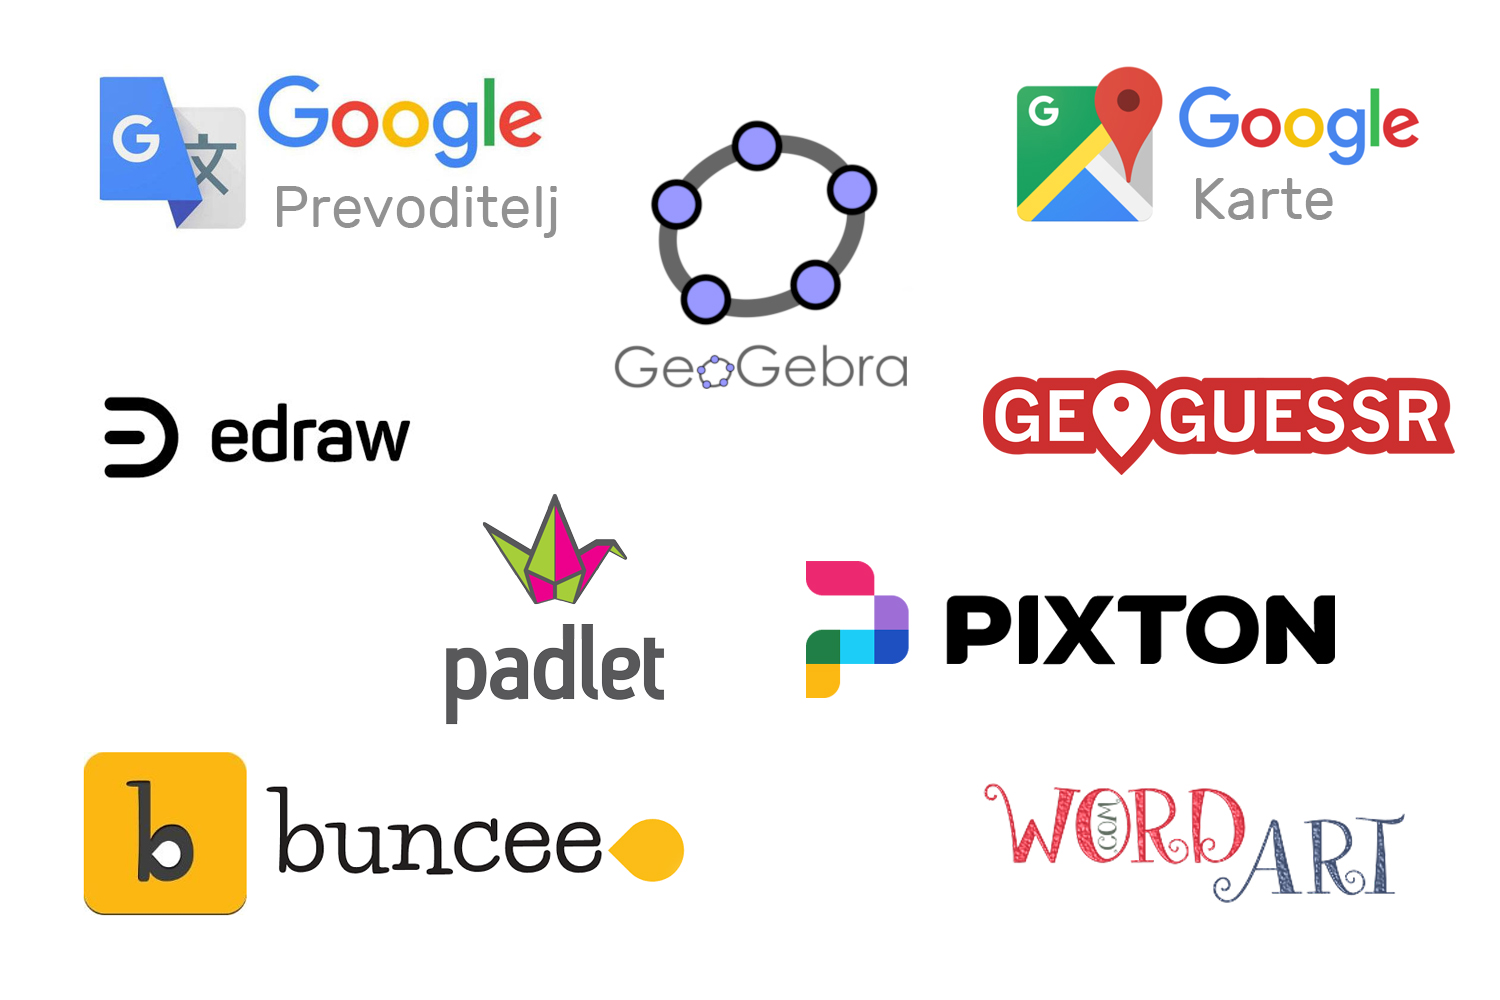 Ikone i nazivi različitih edukativnih alata kao što su to: Google prevoditelj, GeoGebra, Google karte, Geoguessr, Edraw, Pixton, Buncee, Padlet i WordArt.